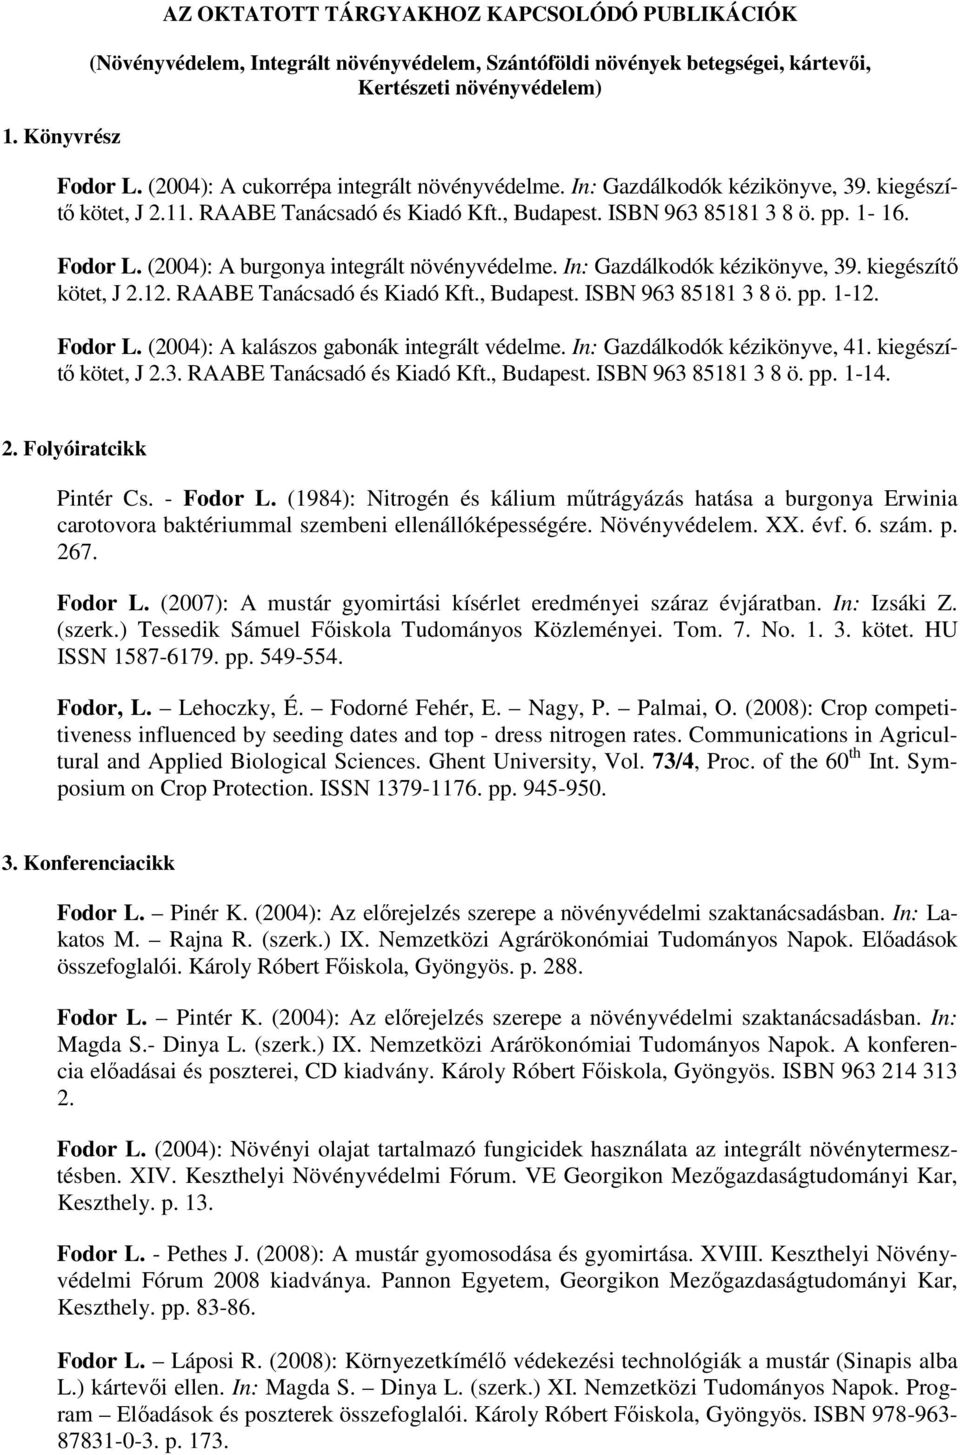 (2004): A burgonya integrált növényvédelme. In: Gazdálkodók kézikönyve, 39. kiegészítő kötet, J 2.12. RAABE Tanácsadó és Kiadó Kft., Budapest. ISBN 963 85181 3 8 ö. pp. 1-12. Fodor L.